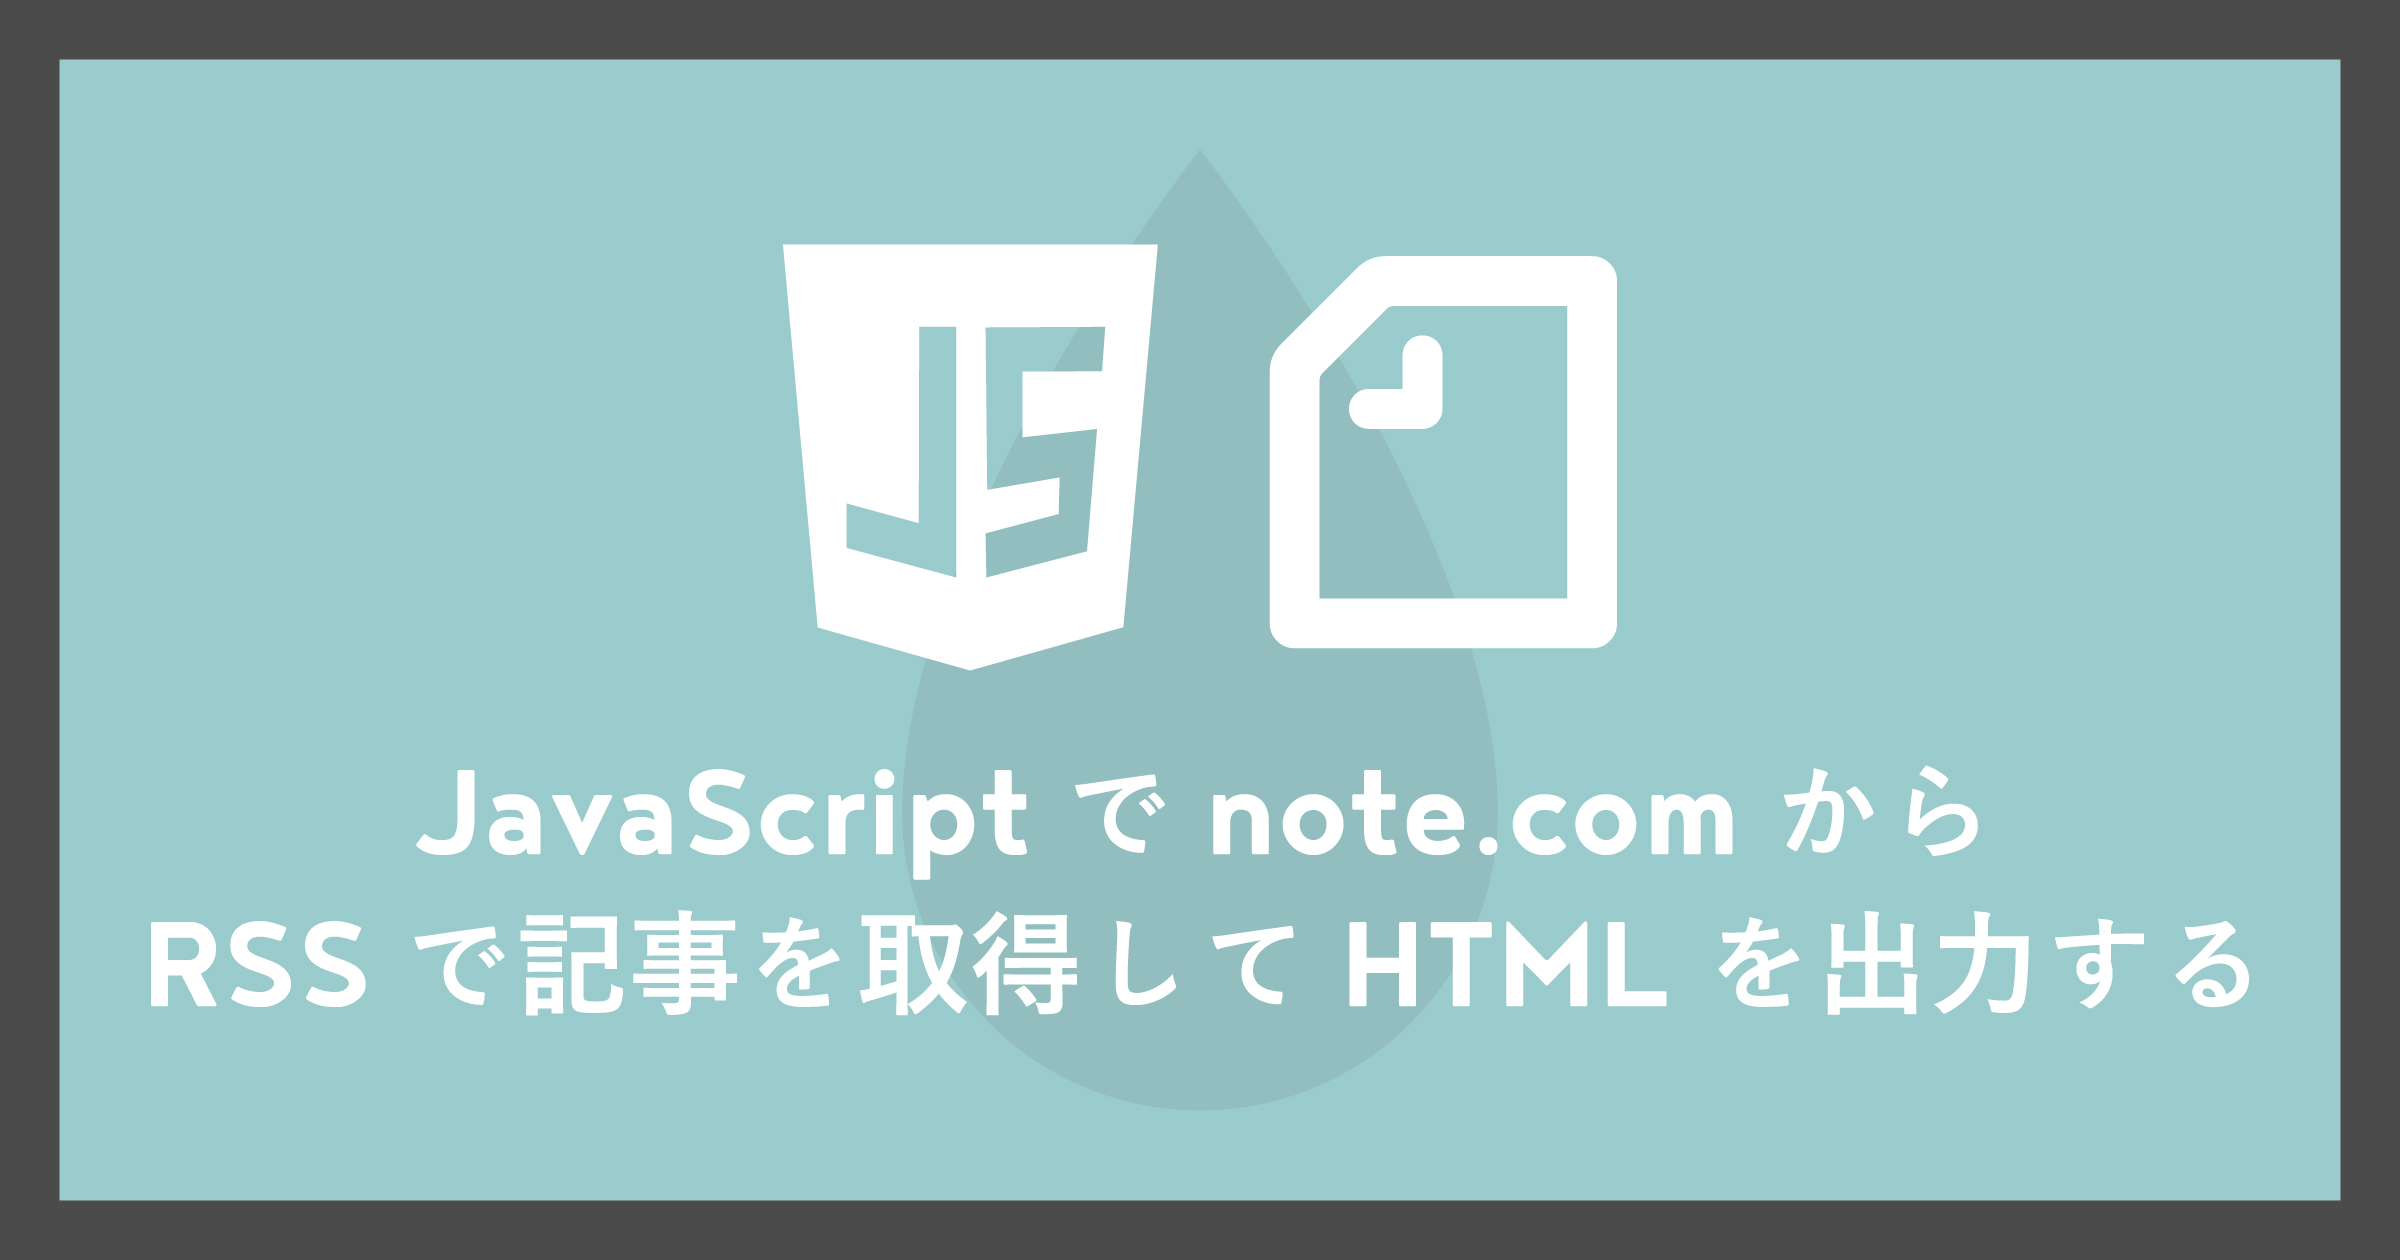 「JavaScriptでnote.comからRSSで記事を取得してHTMLを出力する」のアイキャッチ画像